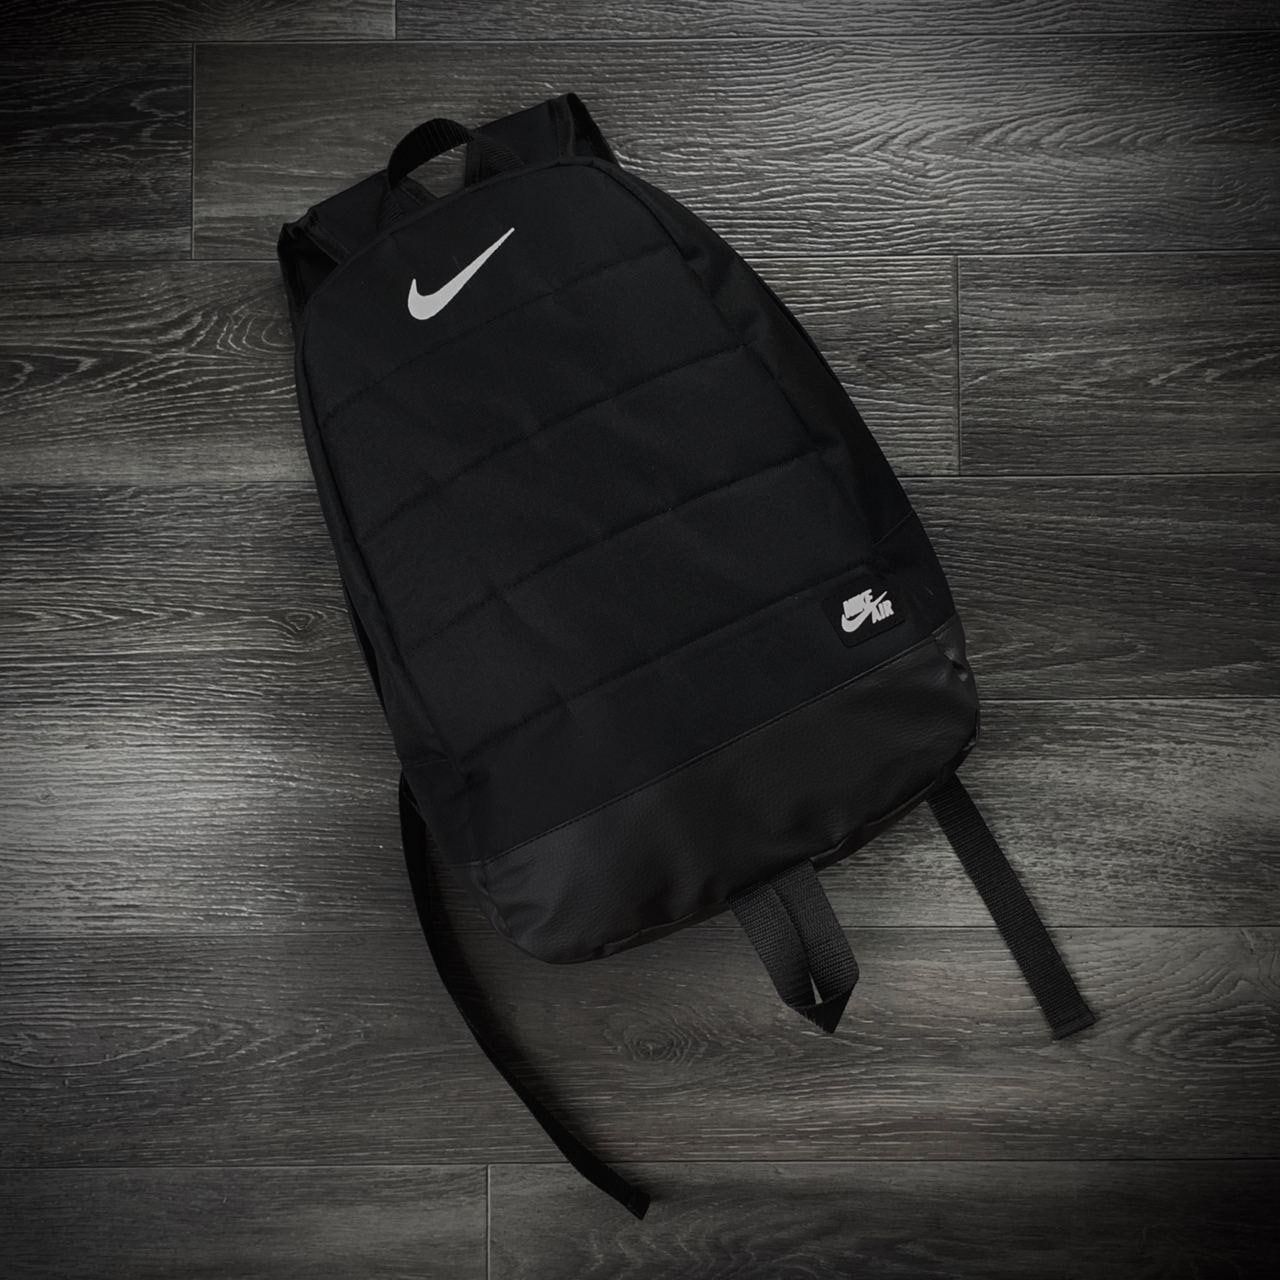 Популярный рюкзак Nike Air черный городской, портфель школьный найк